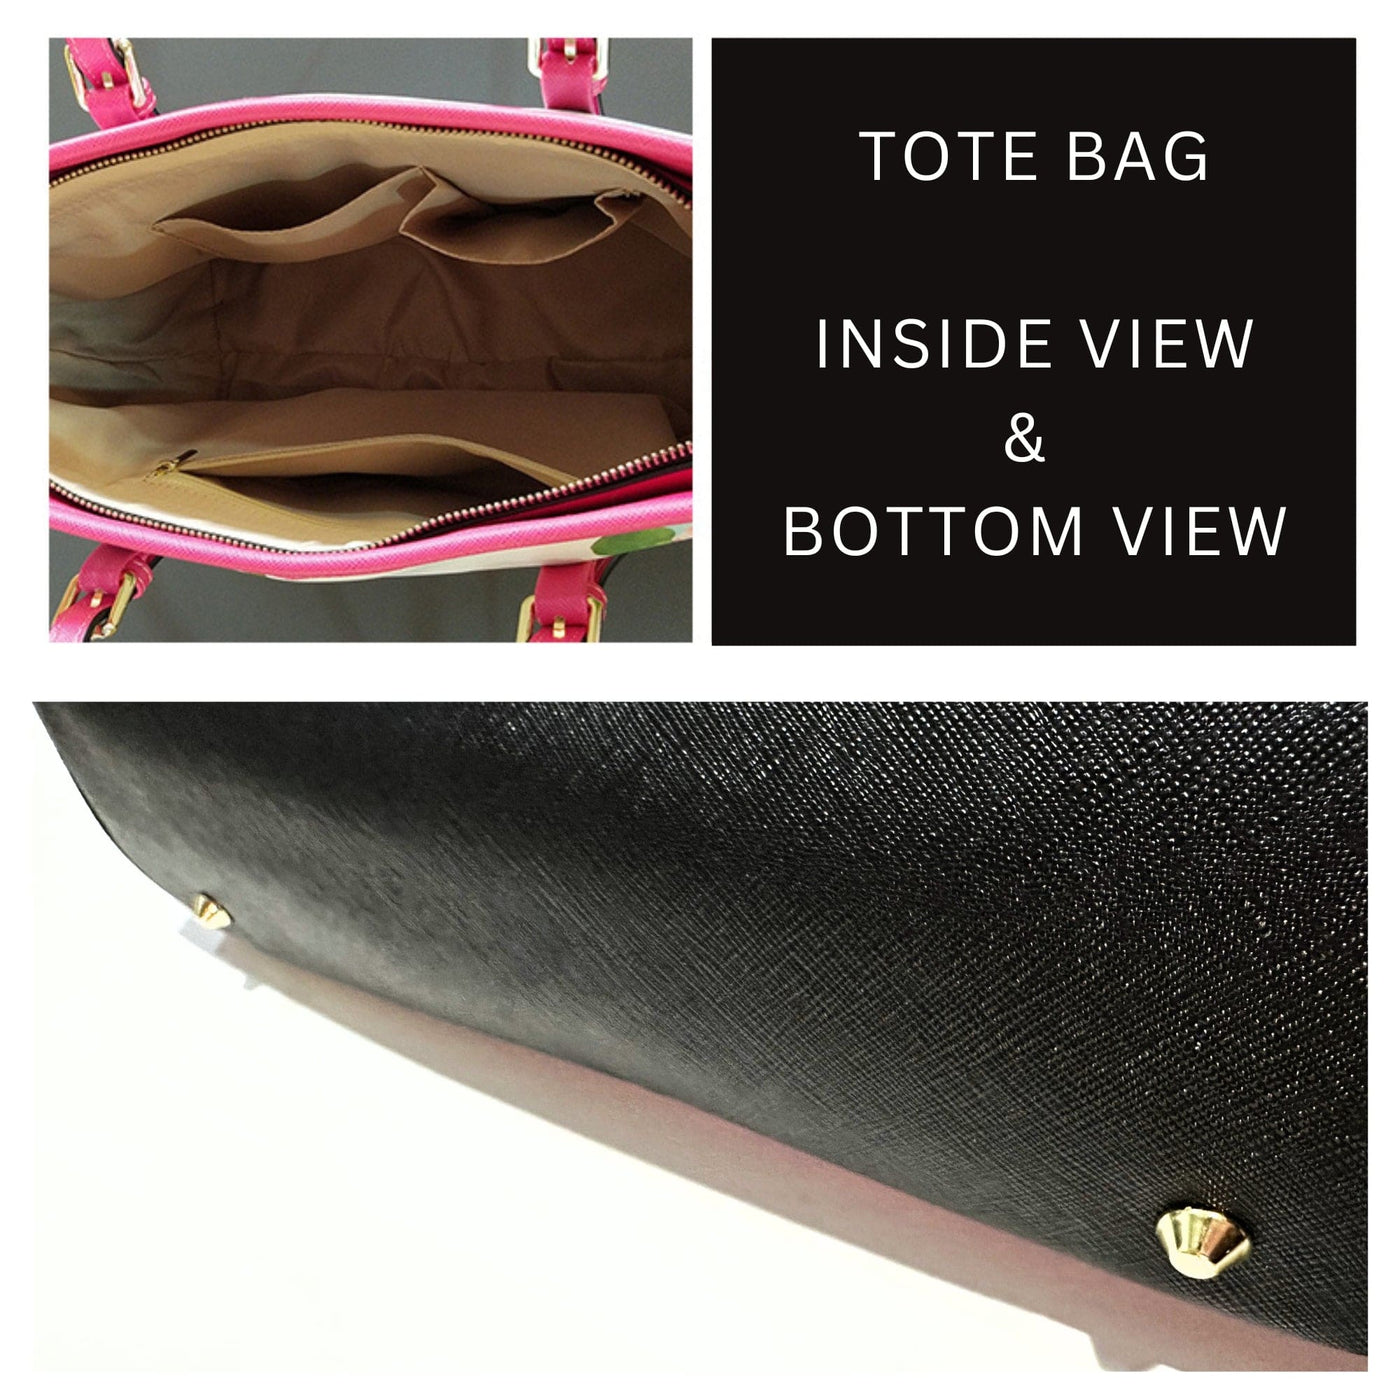 Large Leather Tote Shoulder Bag - Multicolor Grid Handbag - Bags | Leather Tote